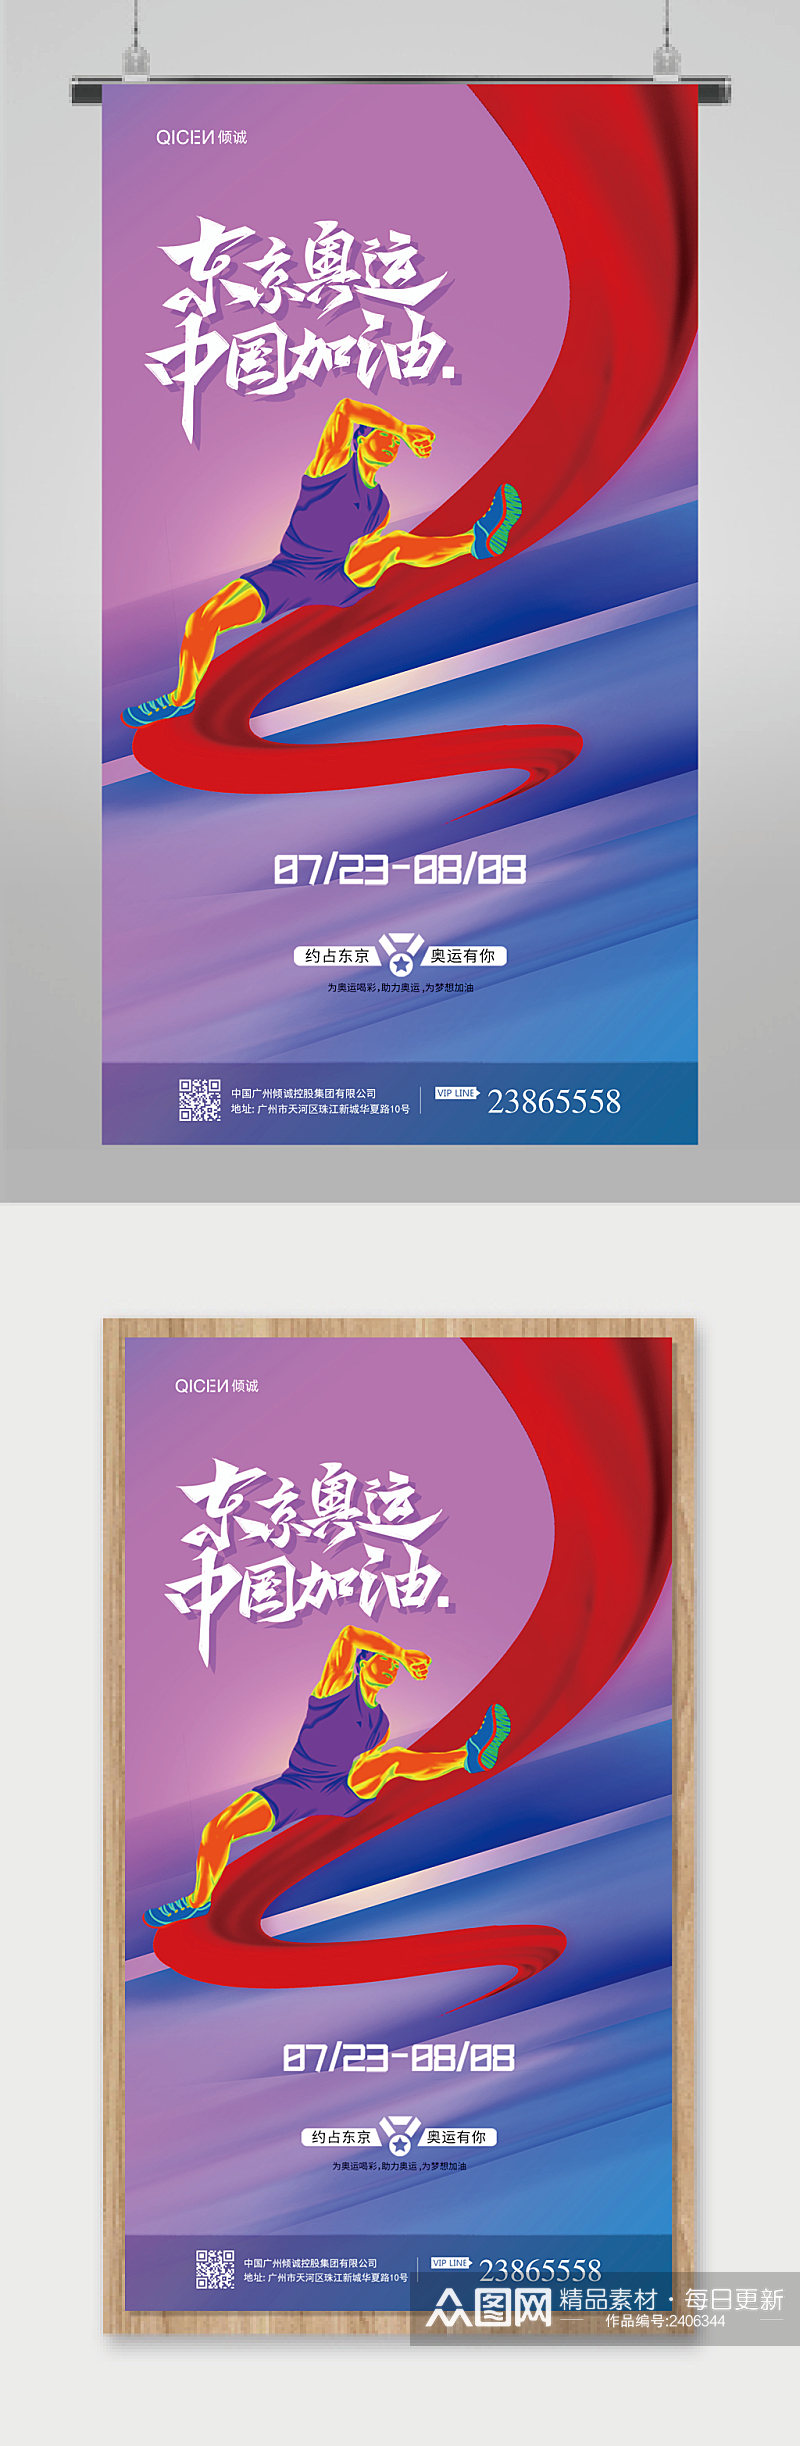 紫色简约大气炫彩东京奥运中国加油海报素材